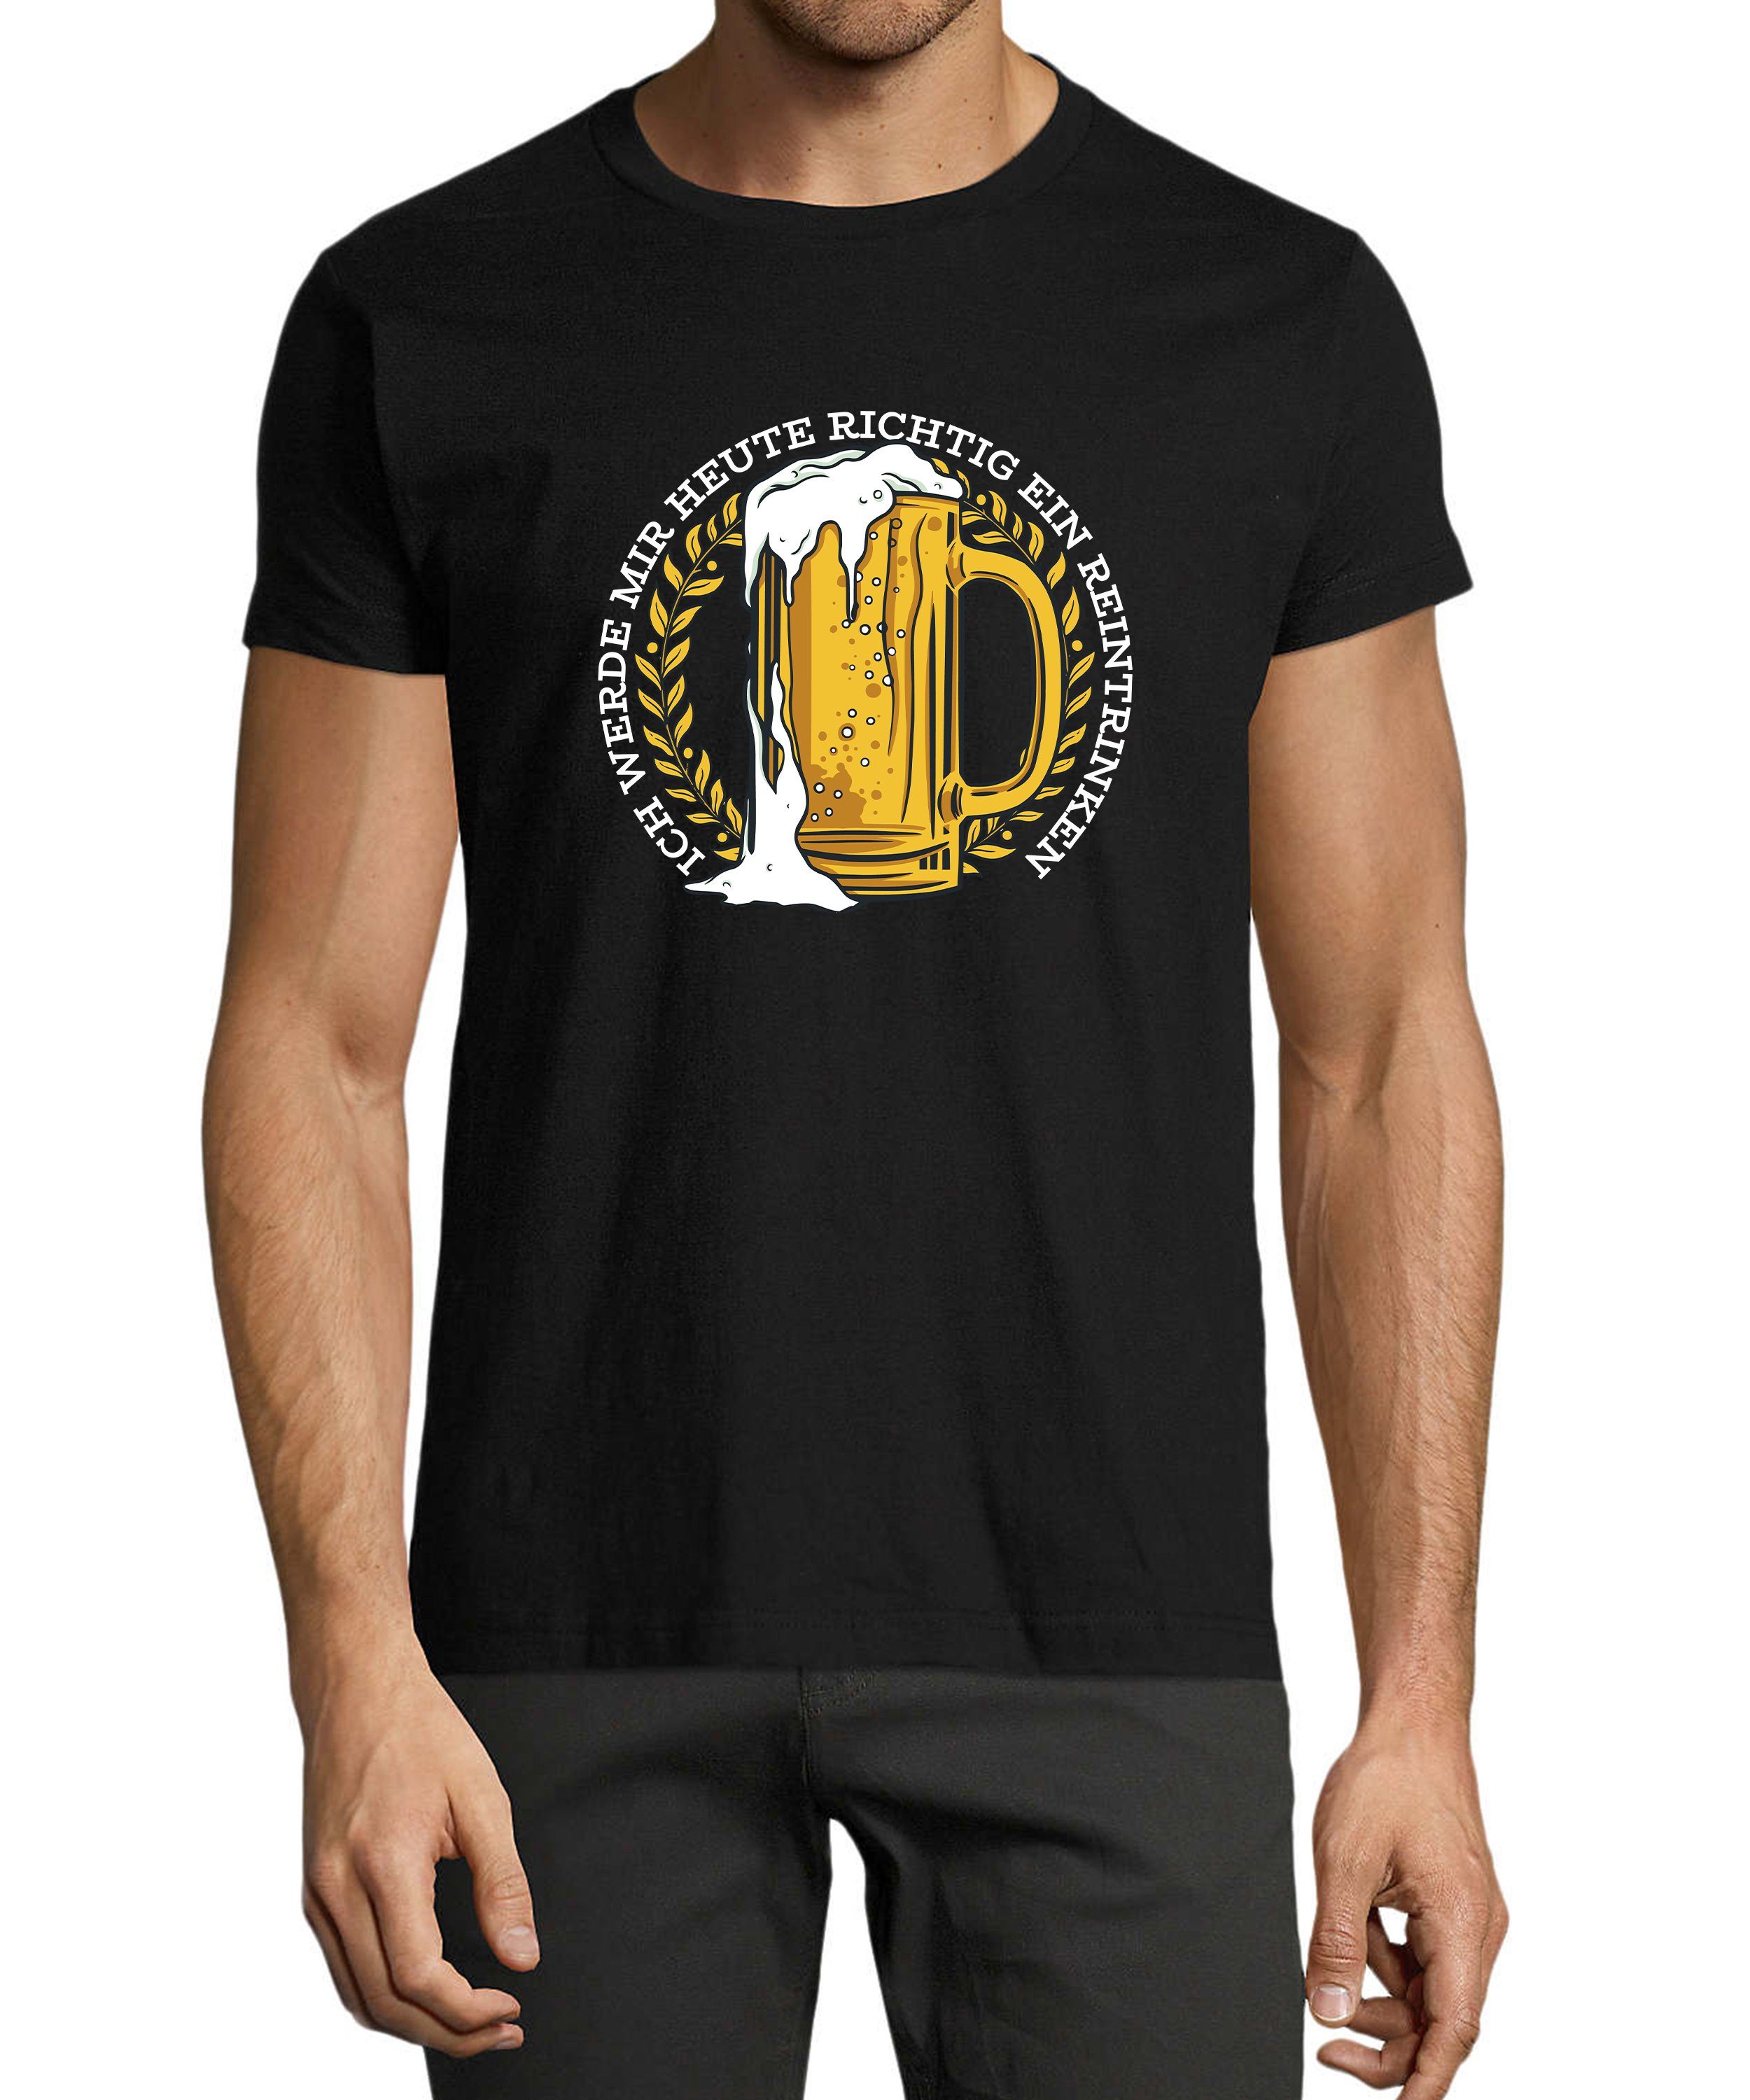 MyDesign24 T-Shirt Herren Fun Print Shirt - Oktoberfest Trinkshirt Mass Bier mit Spruch Baumwollshirt mit Aufdruck Regular Fit, i311 schwarz